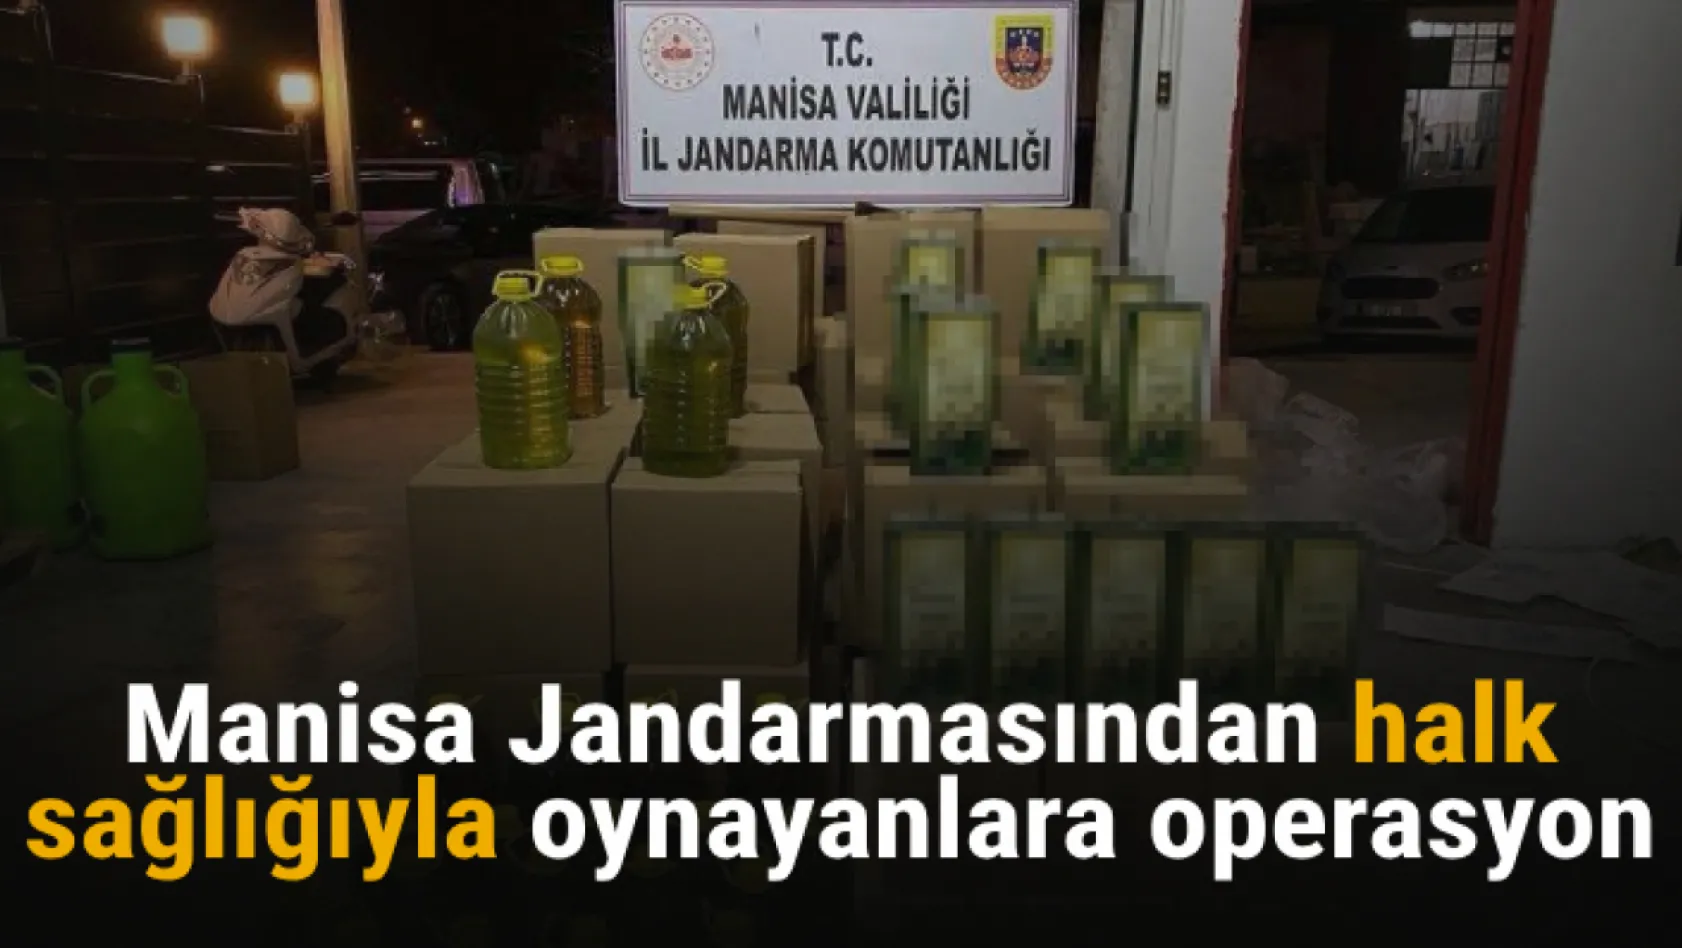 Manisa Jandarmasından halk sağlığıyla oynayanlara operasyon